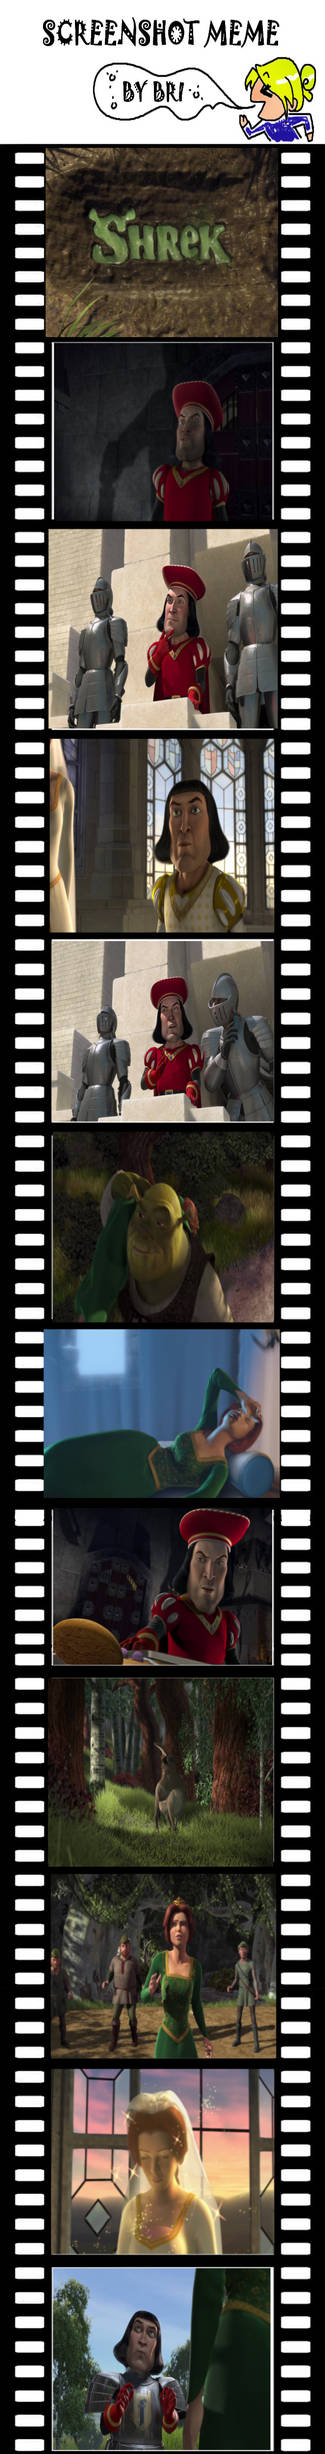 Shrek meme by wya1 on DeviantArt